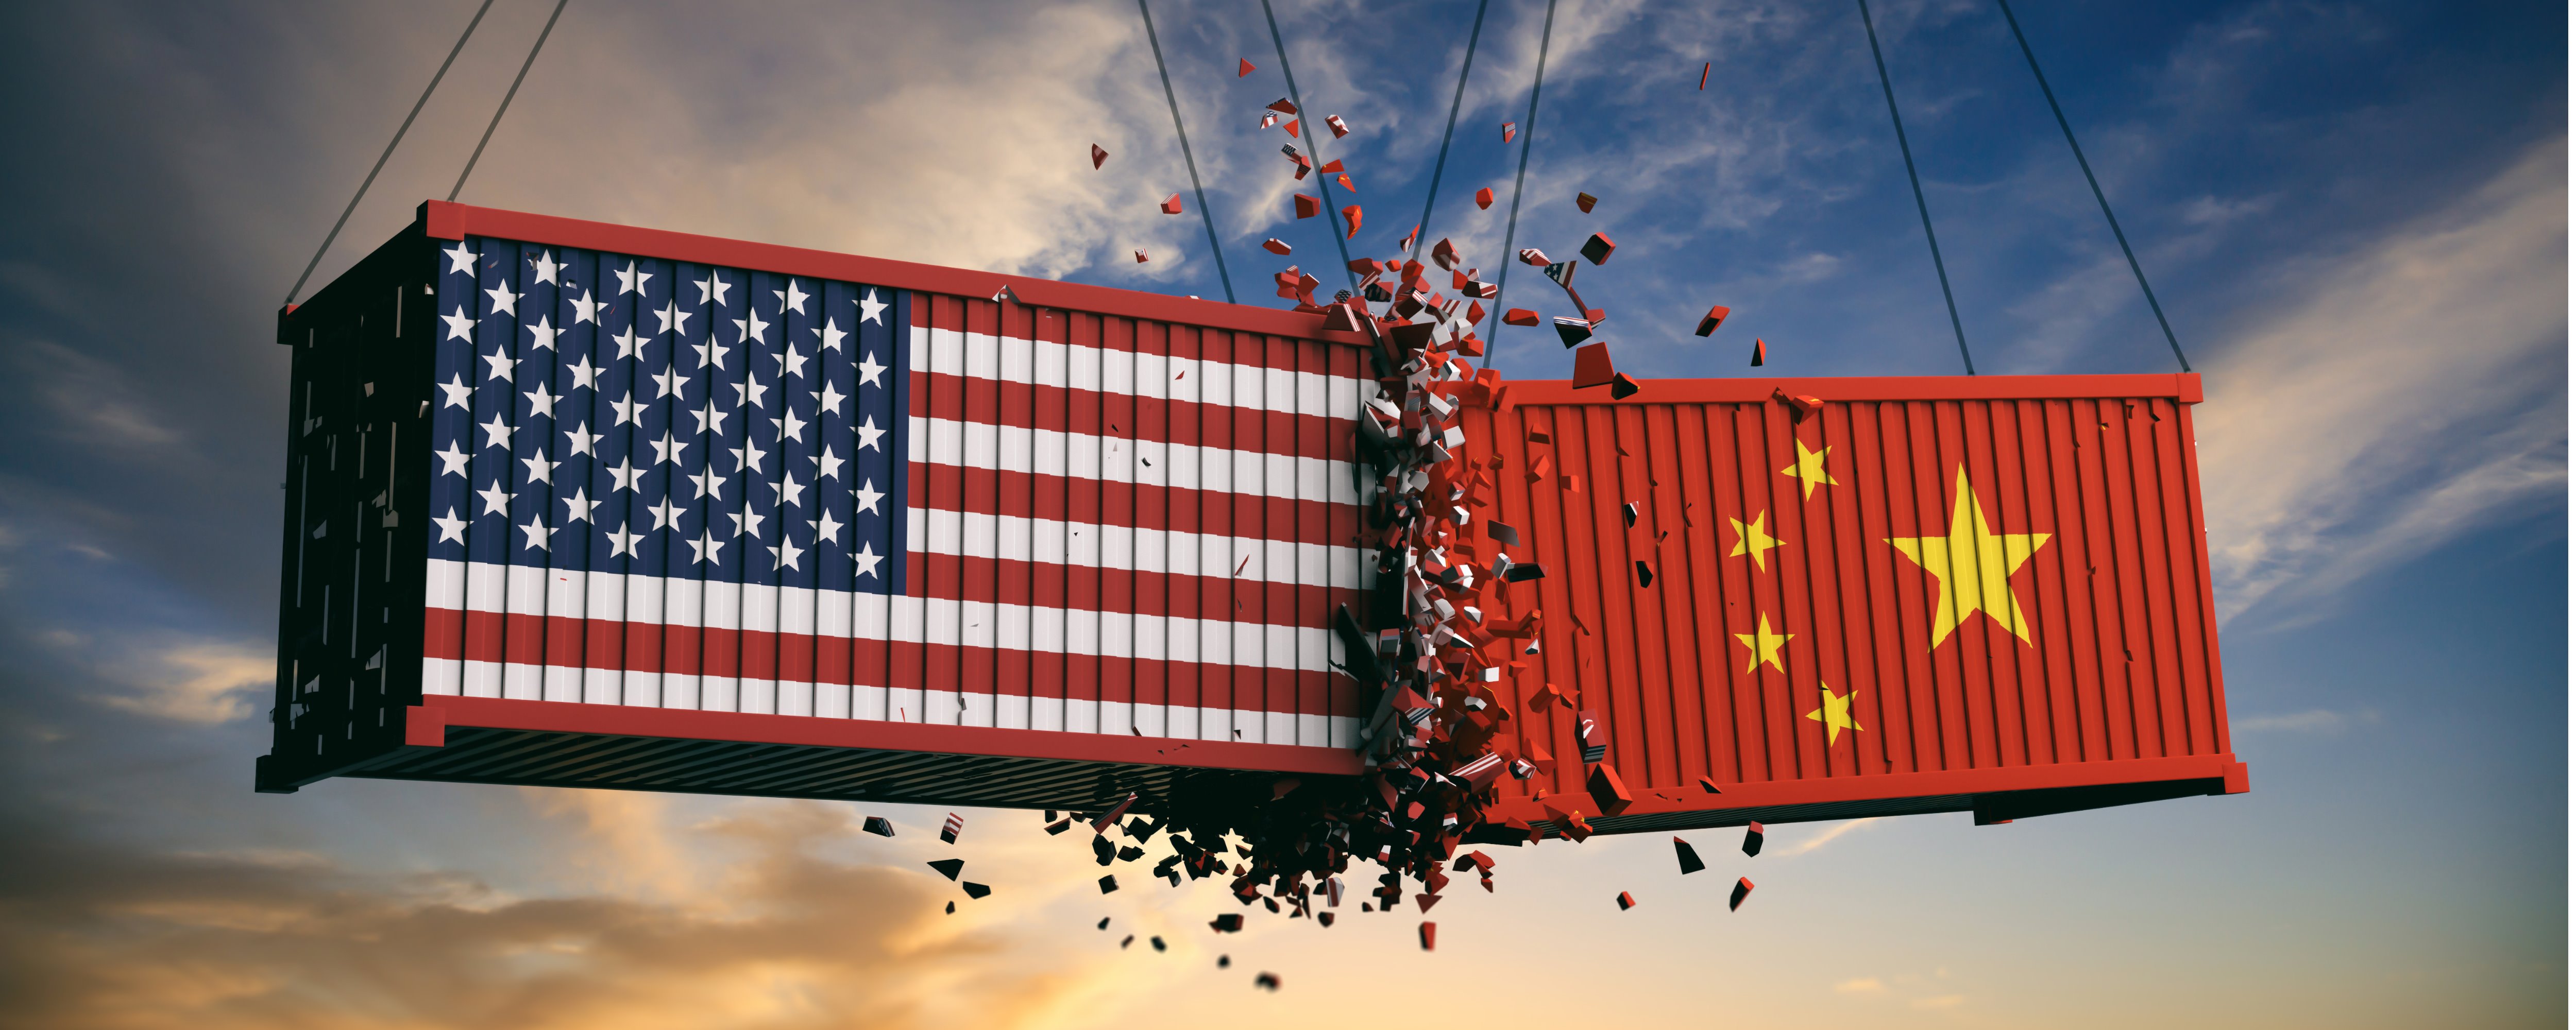 Resolvida a guerra comercial entre os EUA e a China: Huawei tem permissão para negociar com empresas de tecnologia dos EUA